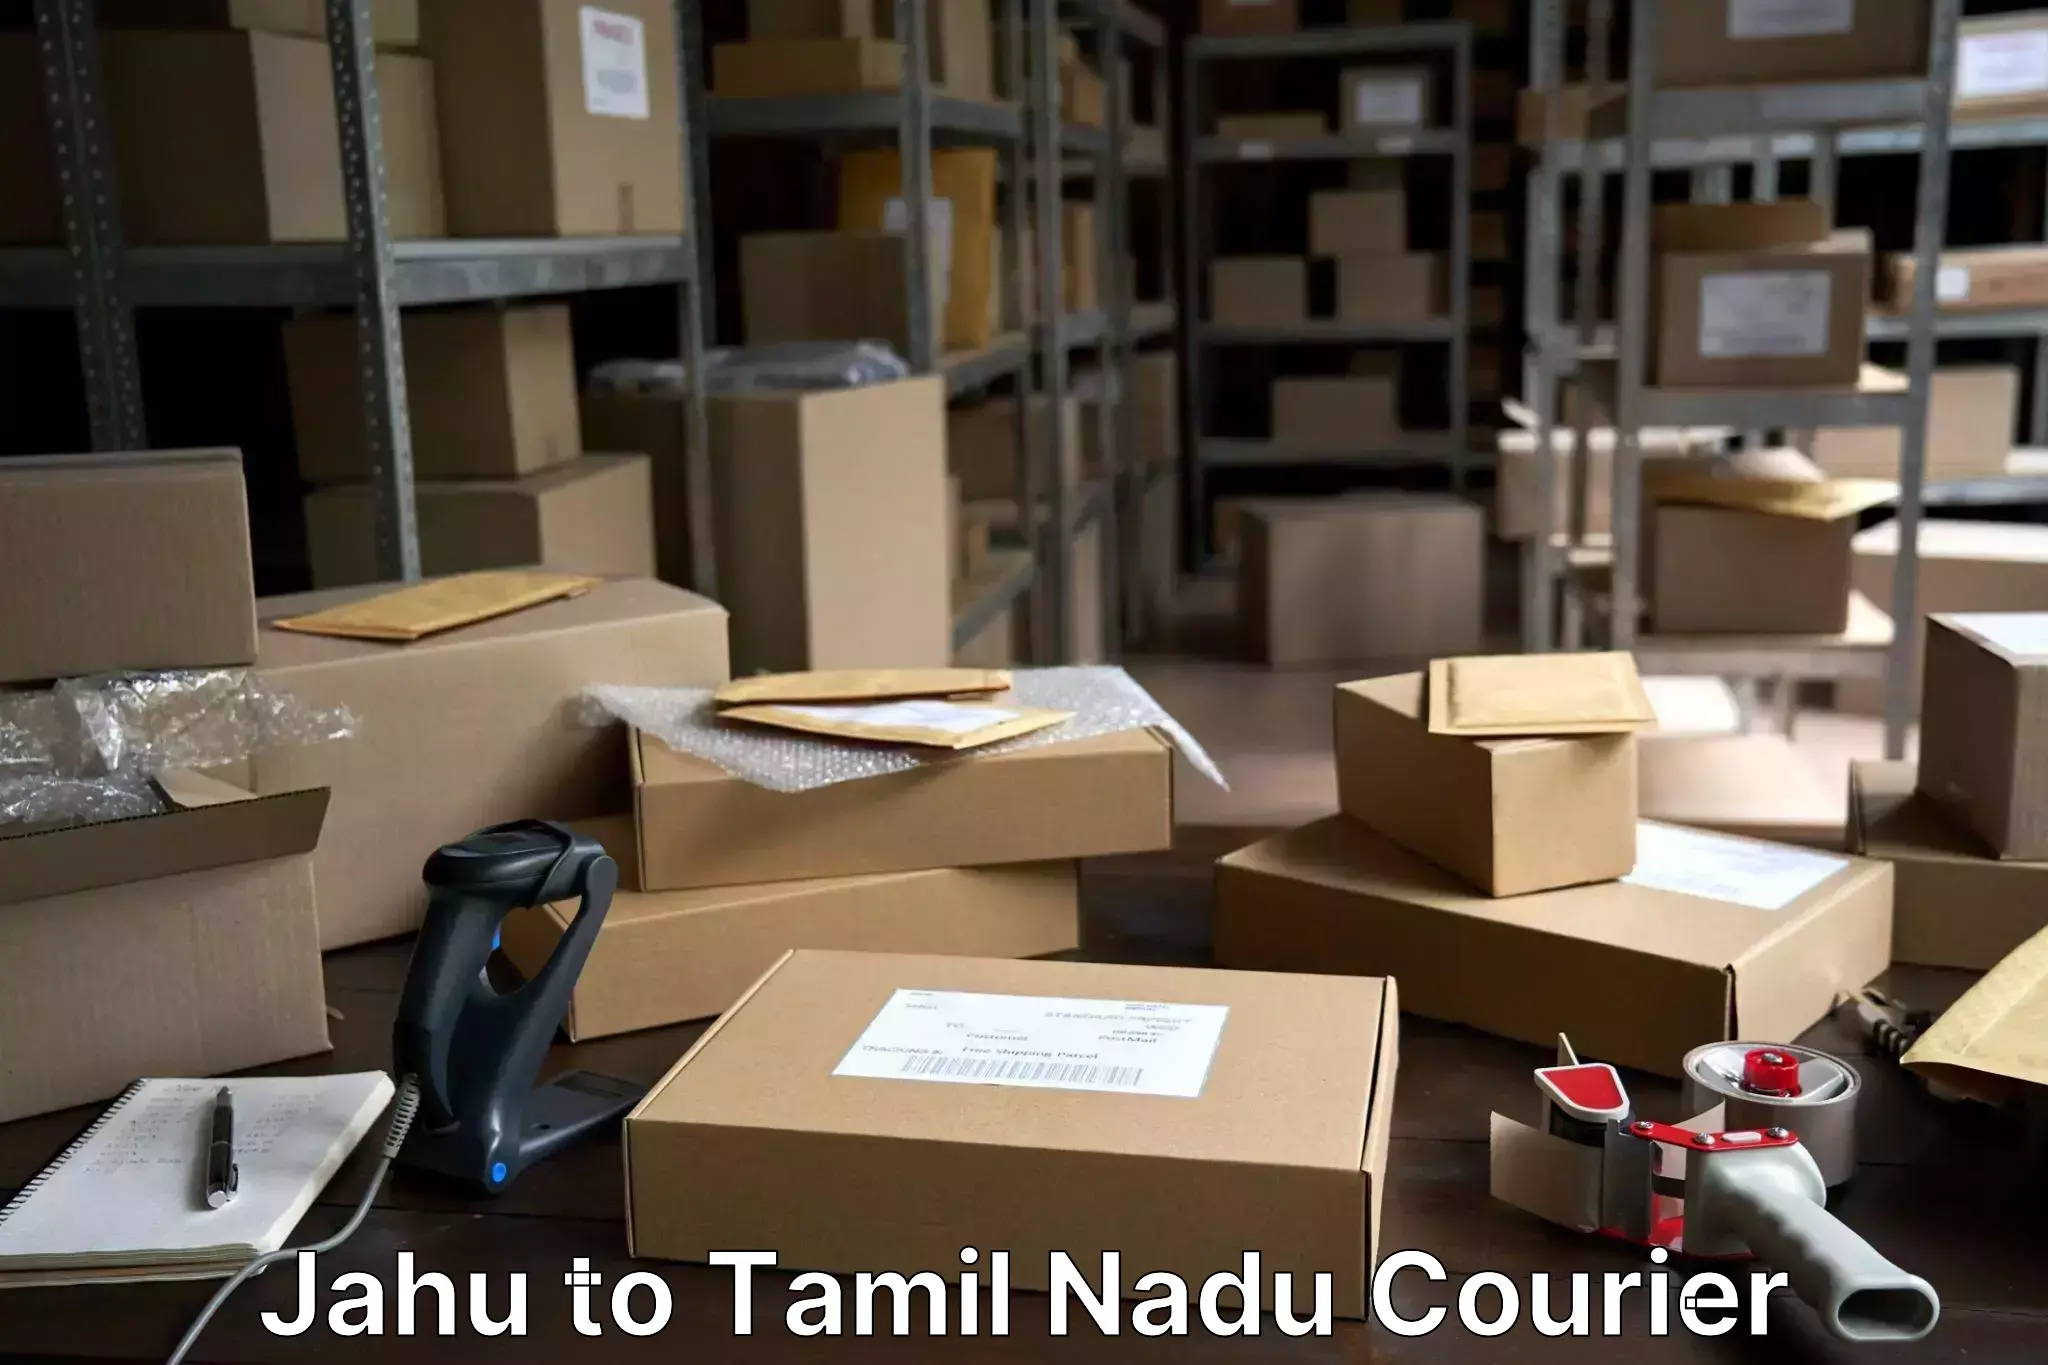 Comprehensive baggage service Jahu to Tamil Nadu